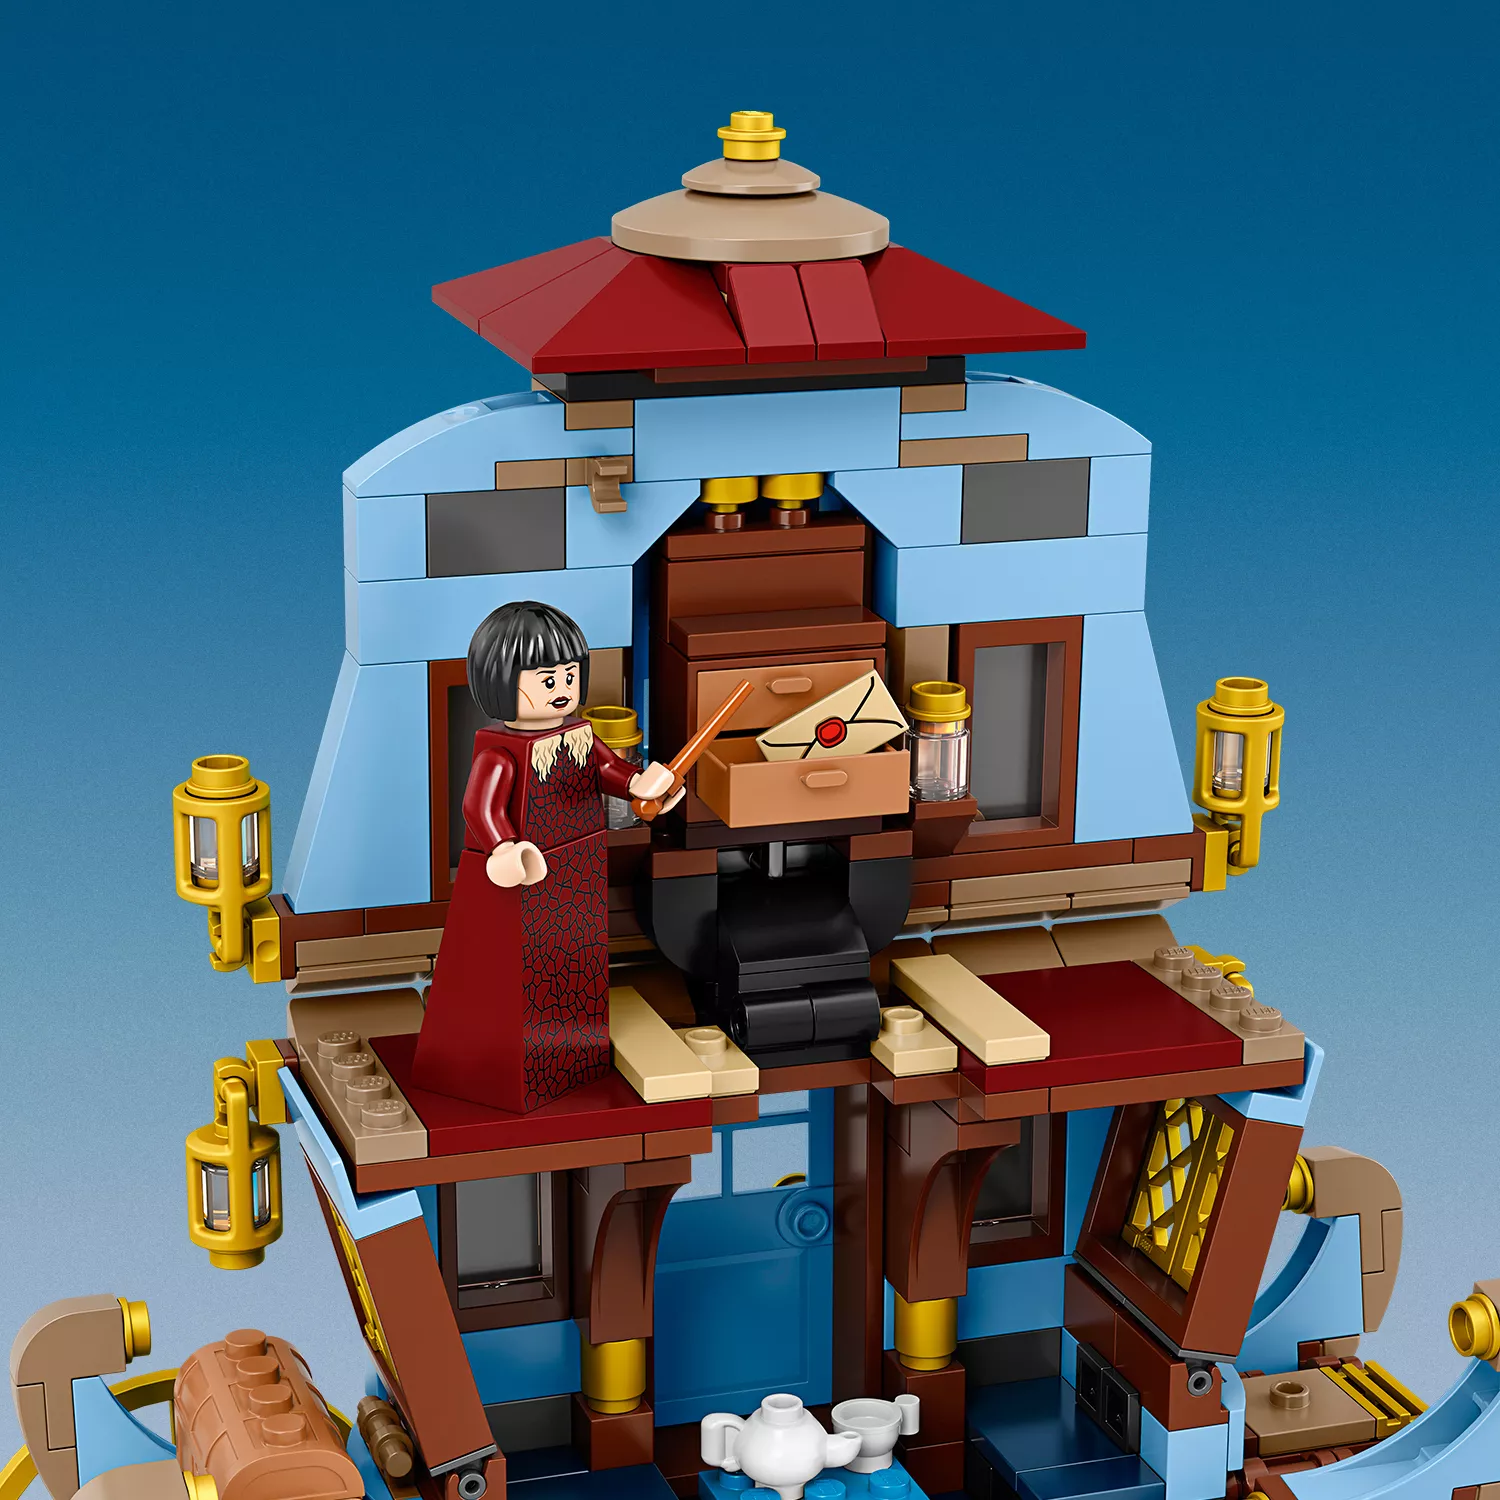 LEGO Harry Potter Kutsche von Beauxbatons: Ankunft in Hogwarts - 75958